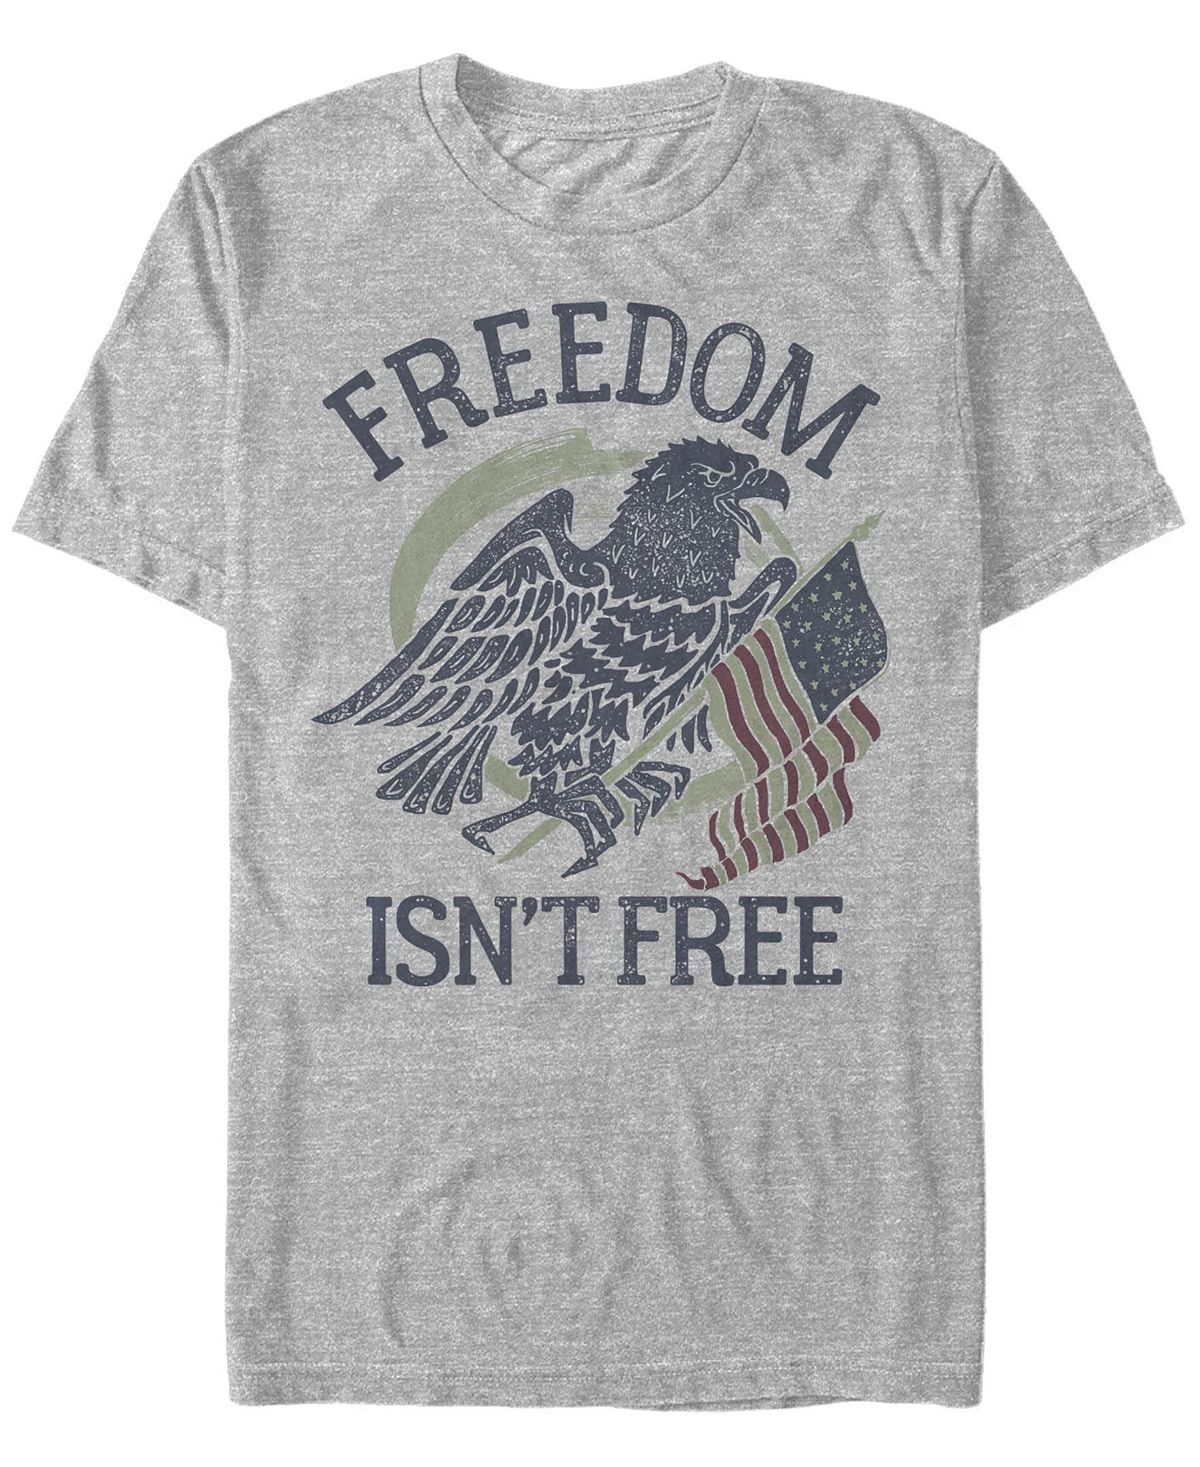 Мужская футболка freedom eagles с круглым вырезом и короткими рукавами Fifth Sun, мульти фотографии